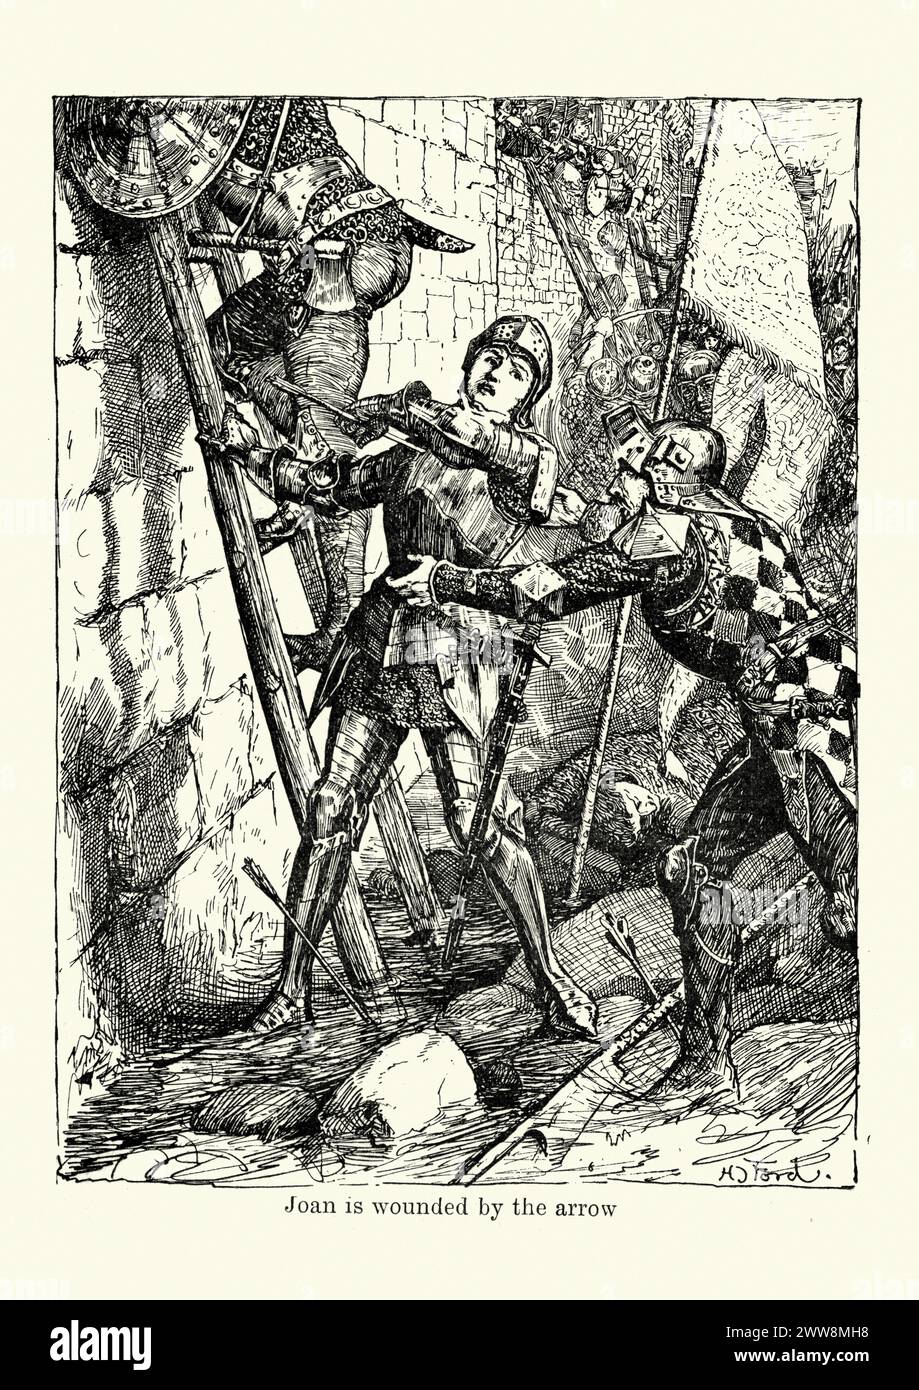 Vintage-Gravur, die eine Szene aus dem Leben von Jeanne d'Arc erschüttert. Joan of Arc um 1412 bis 1431, auch als die Maid of Orleans bezeichnet, gilt als Heldin Frankreichs für ihre Rolle während des Hundertjährigen Krieges. Joan of Arc wird durch den Pfeil verletzt, während er die Burgmauern stürmt. Stockfoto